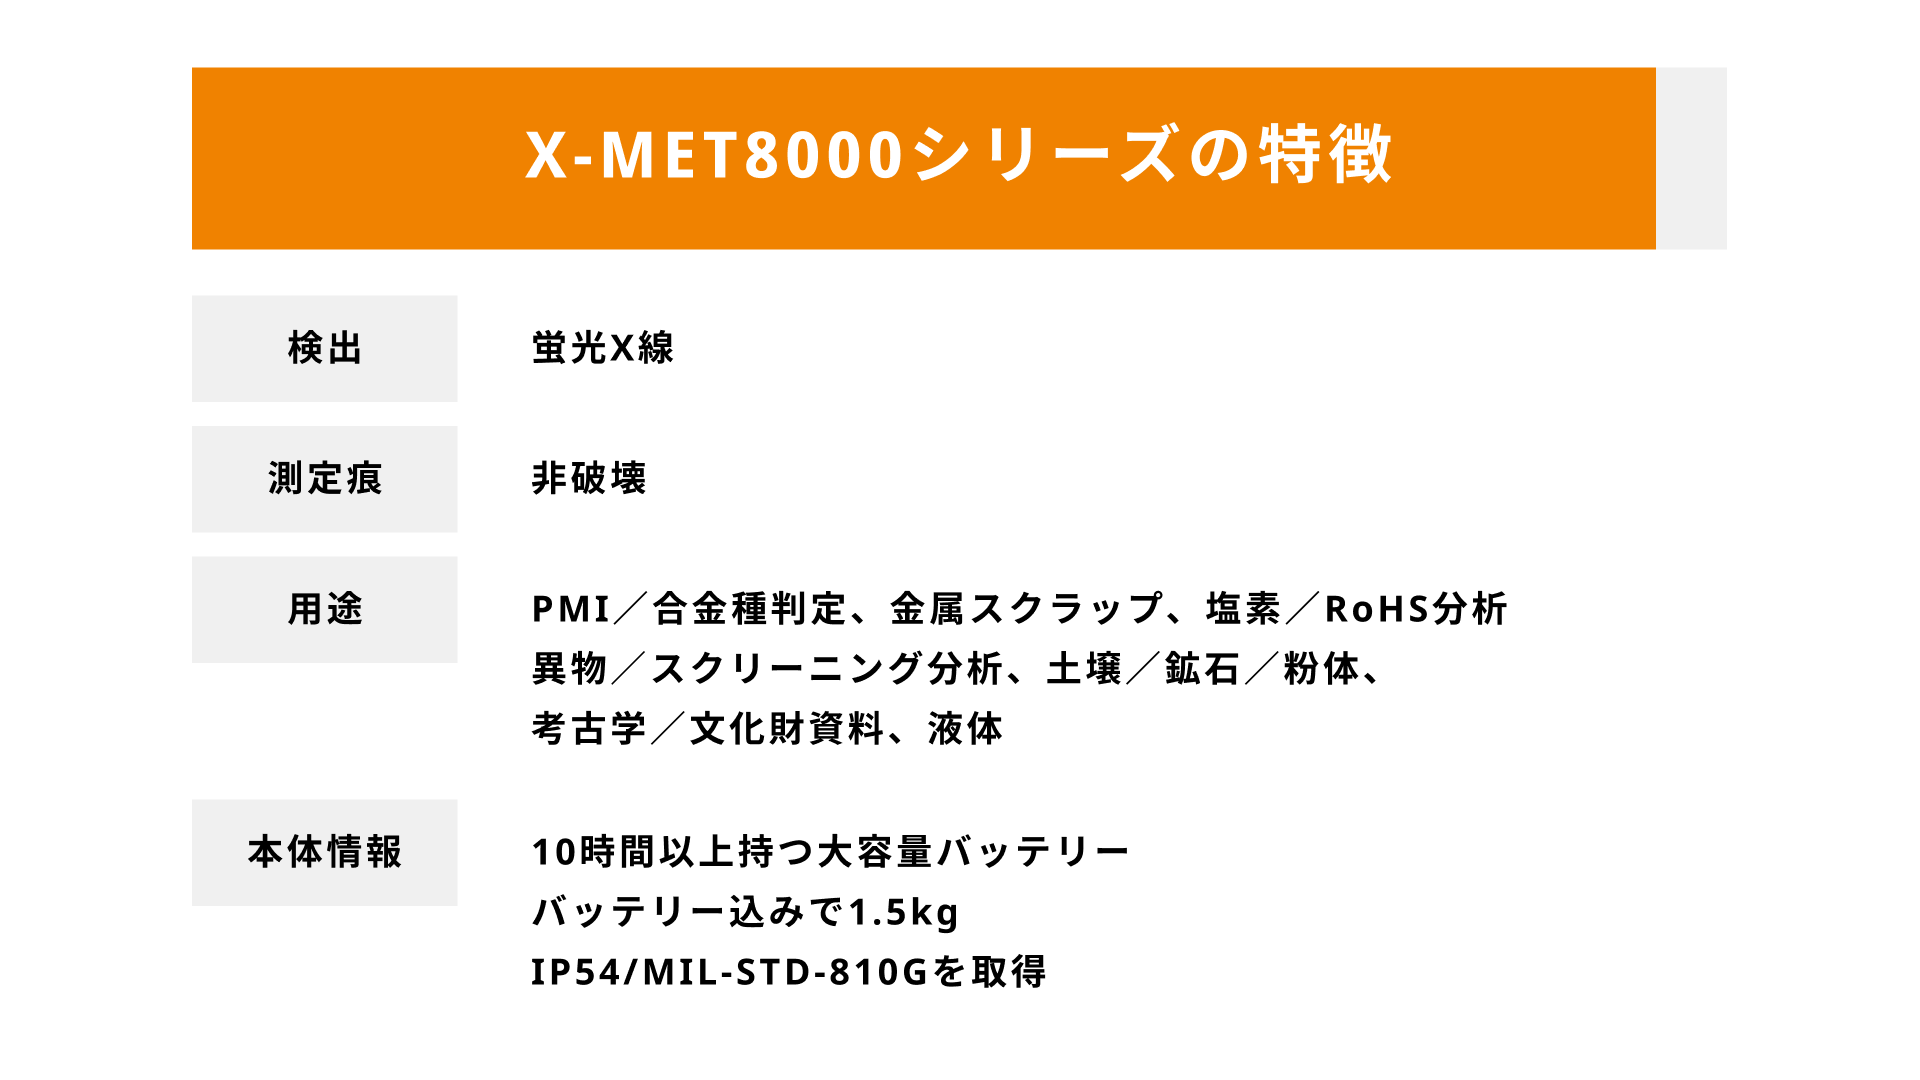 【スライド】片手で持てる 金属/樹脂 分析装置「X-MET8000 / VULCANシリーズ」